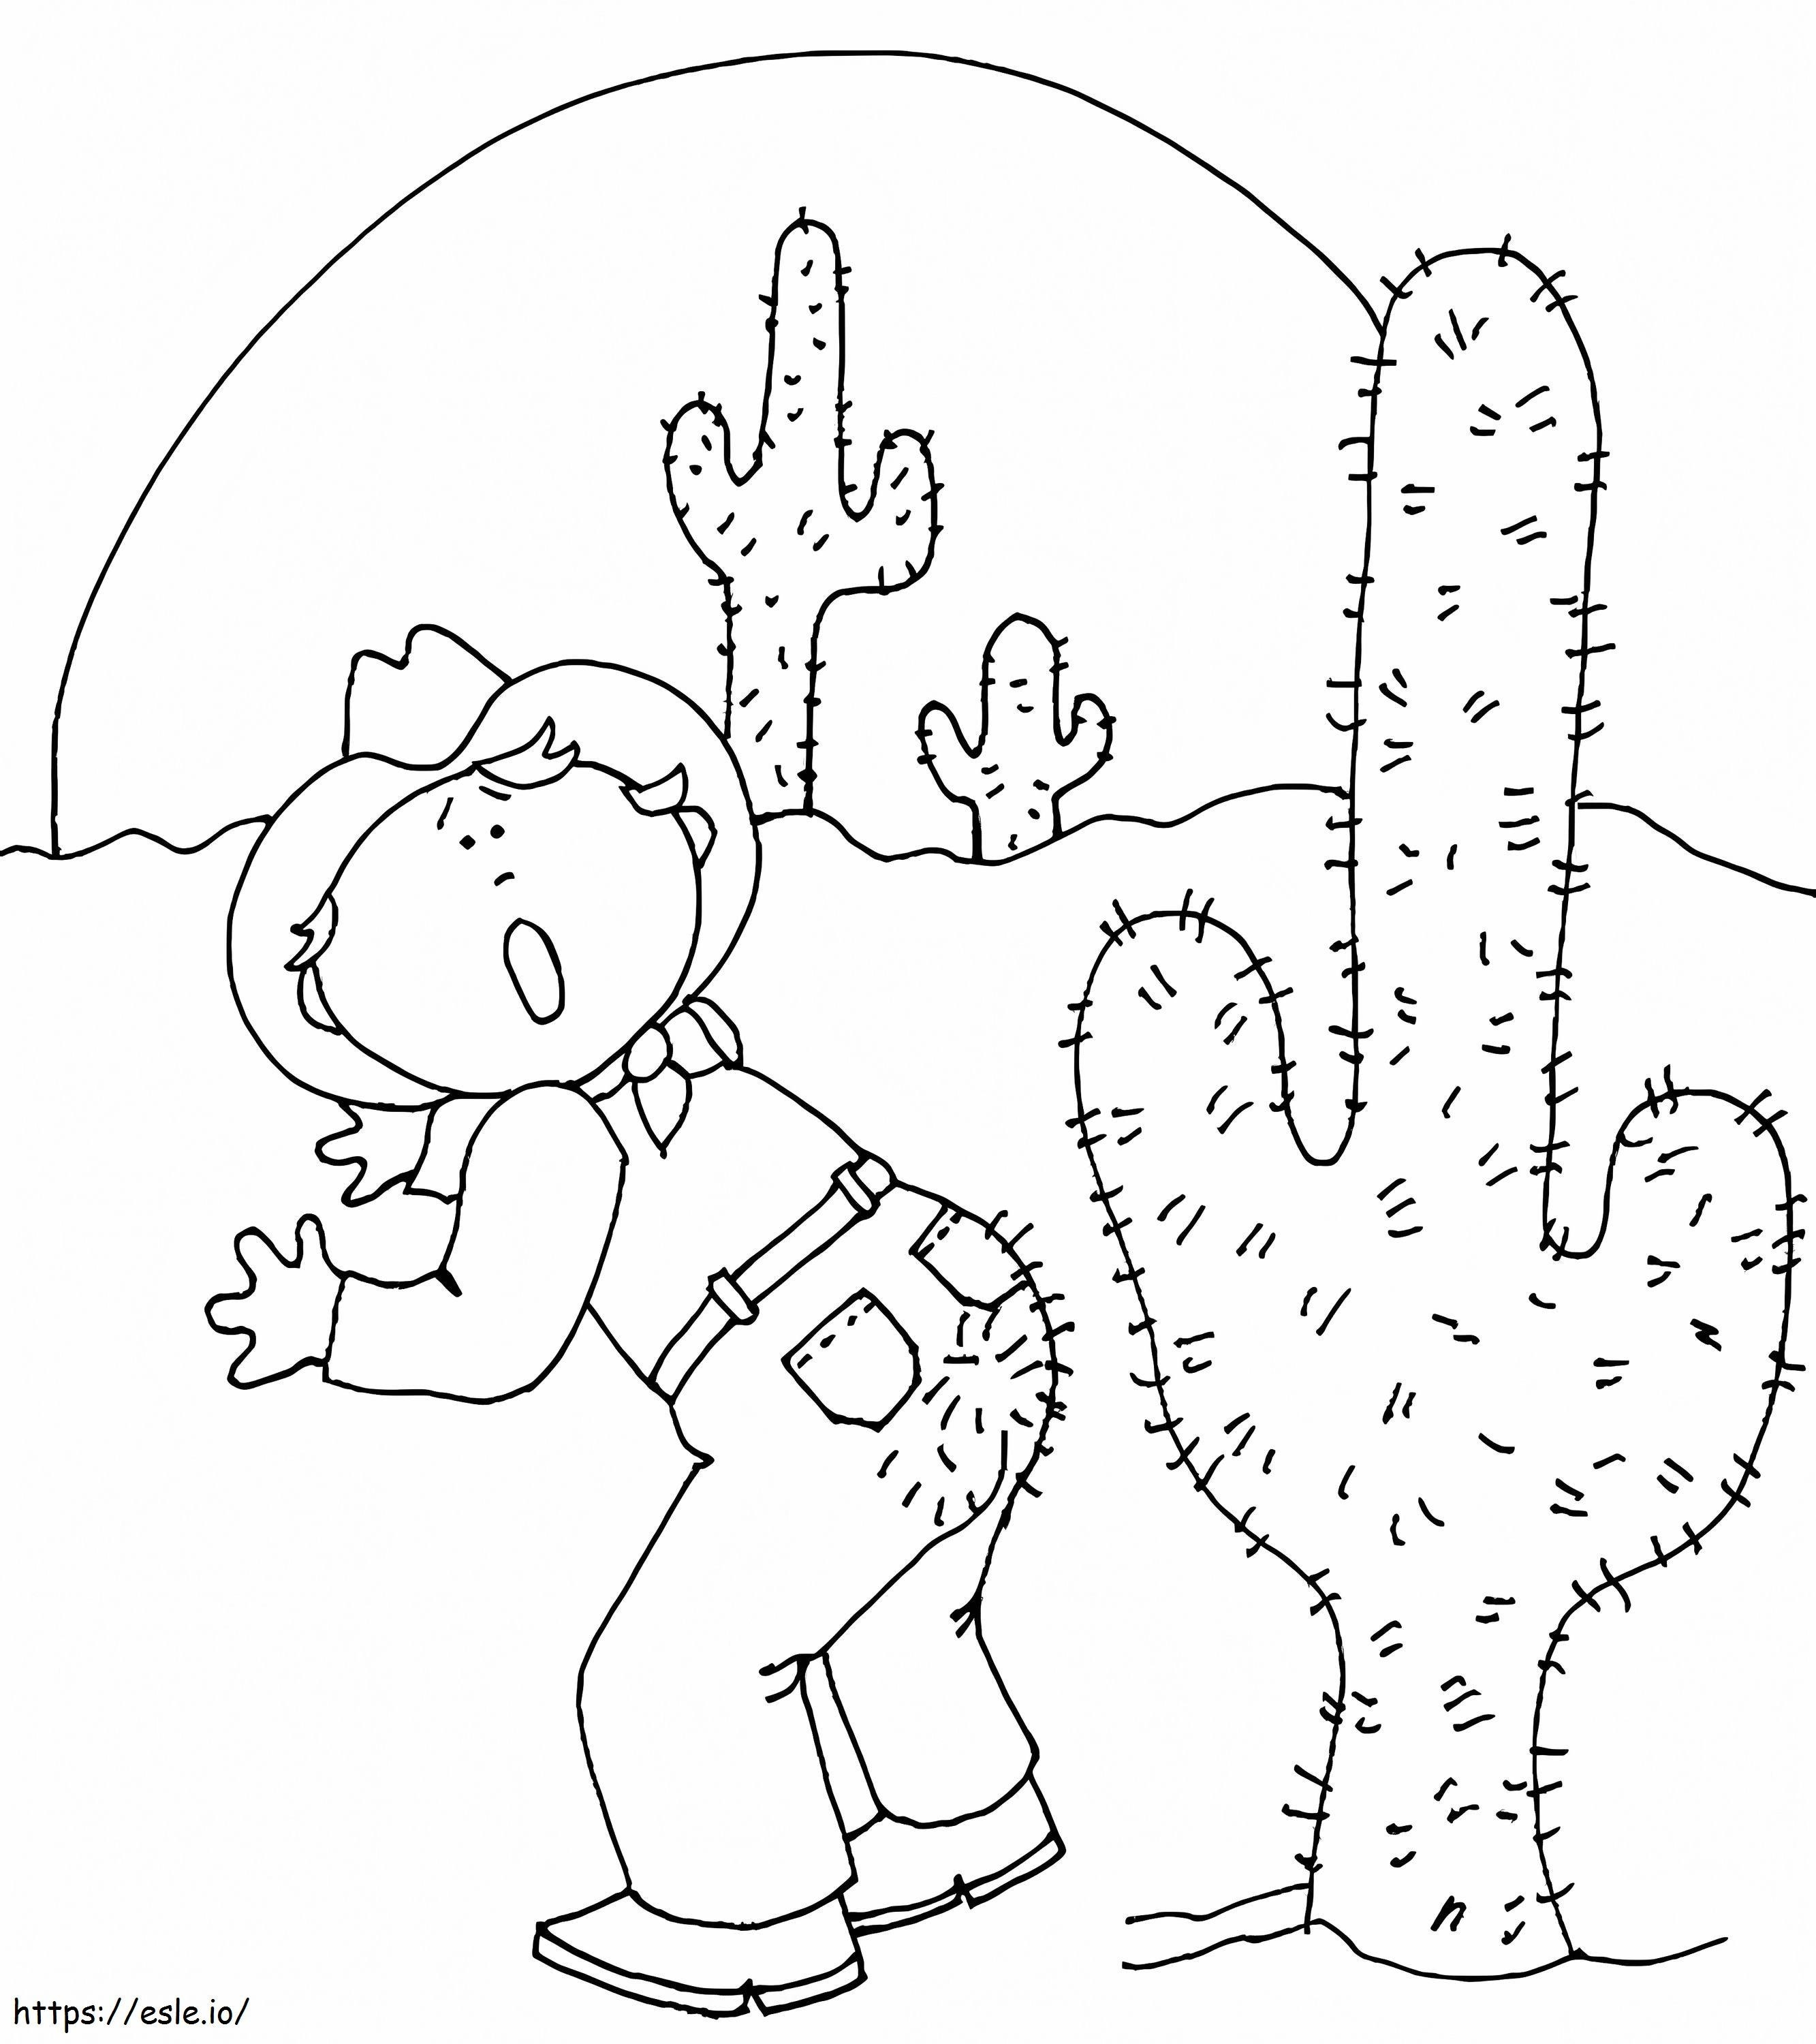 Coloriage Un homme poignardé par un cactus à imprimer dessin